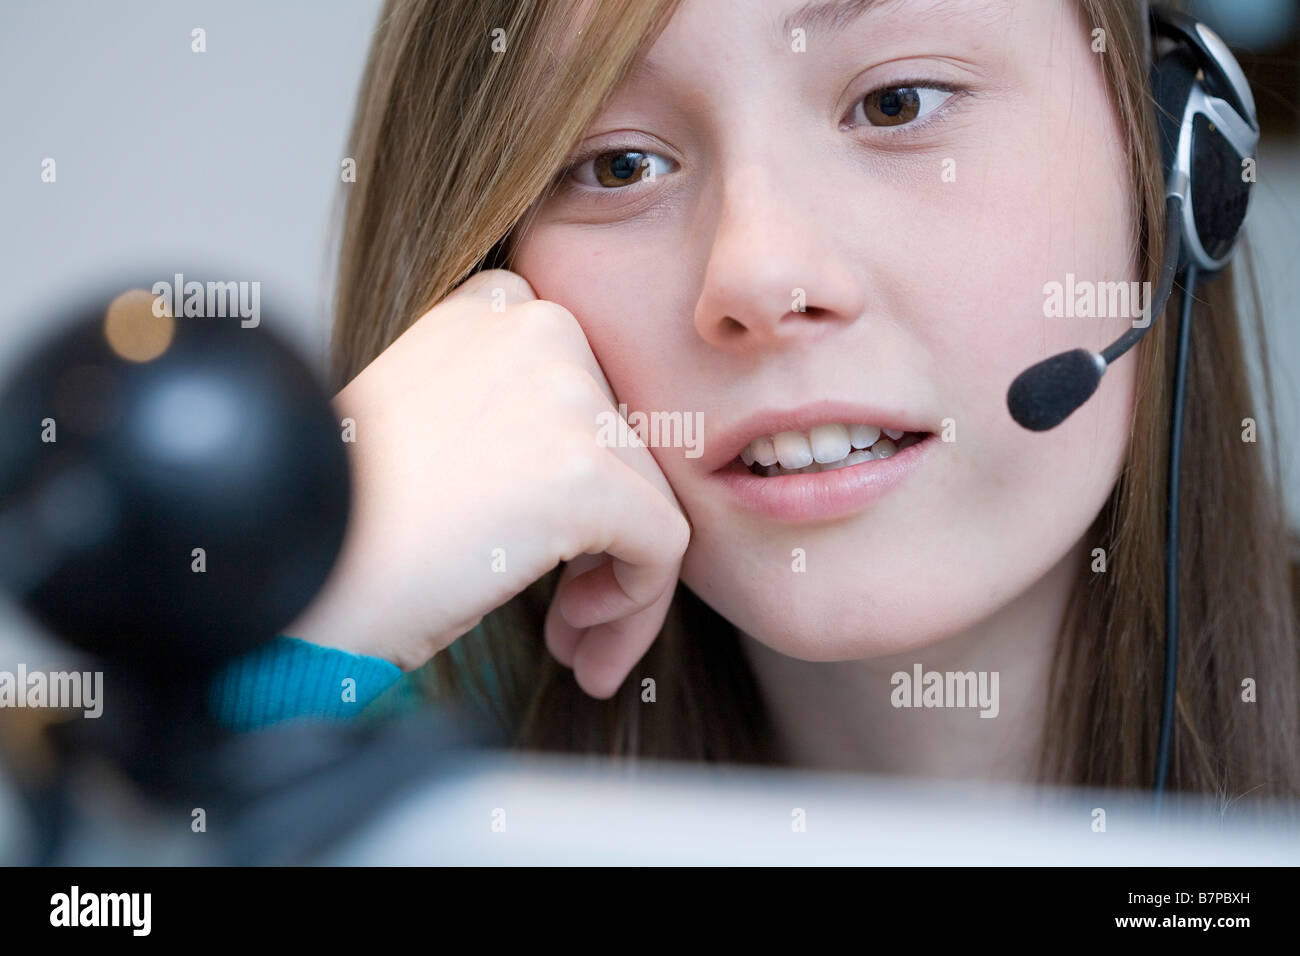 junge Teenager-Mädchen mit Computer Laptop mit Web-cam Stockfotografie -  Alamy